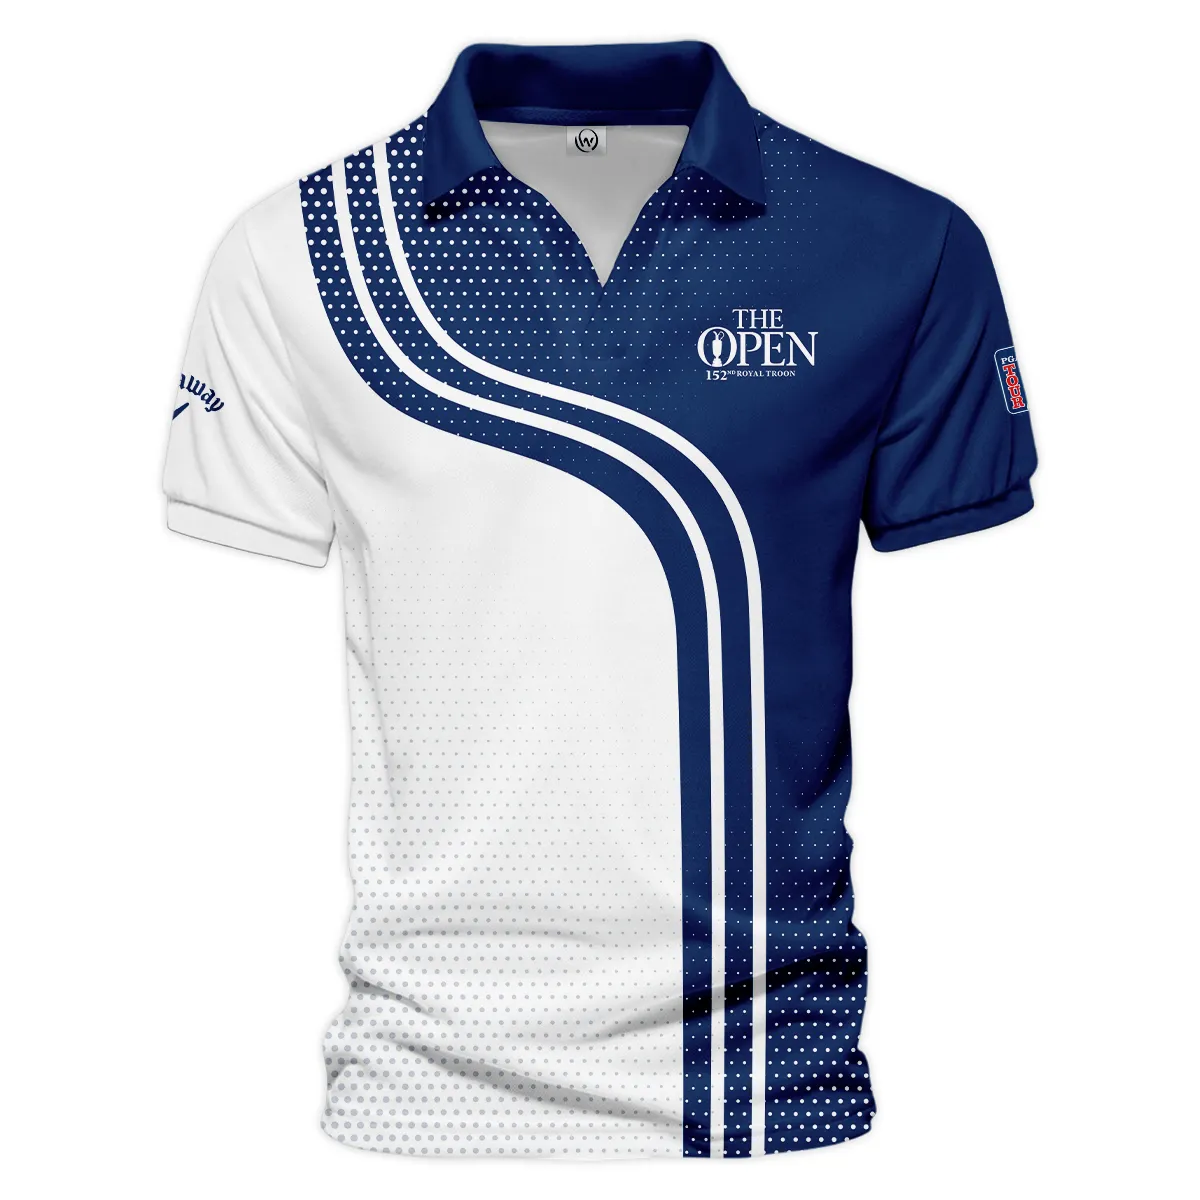 Golf Blue Mix White Sport 152nd Open Championship Pinehurst Callaway Zipper Polo Shirt All Over Prints QTTOP1806A1CLWZPL